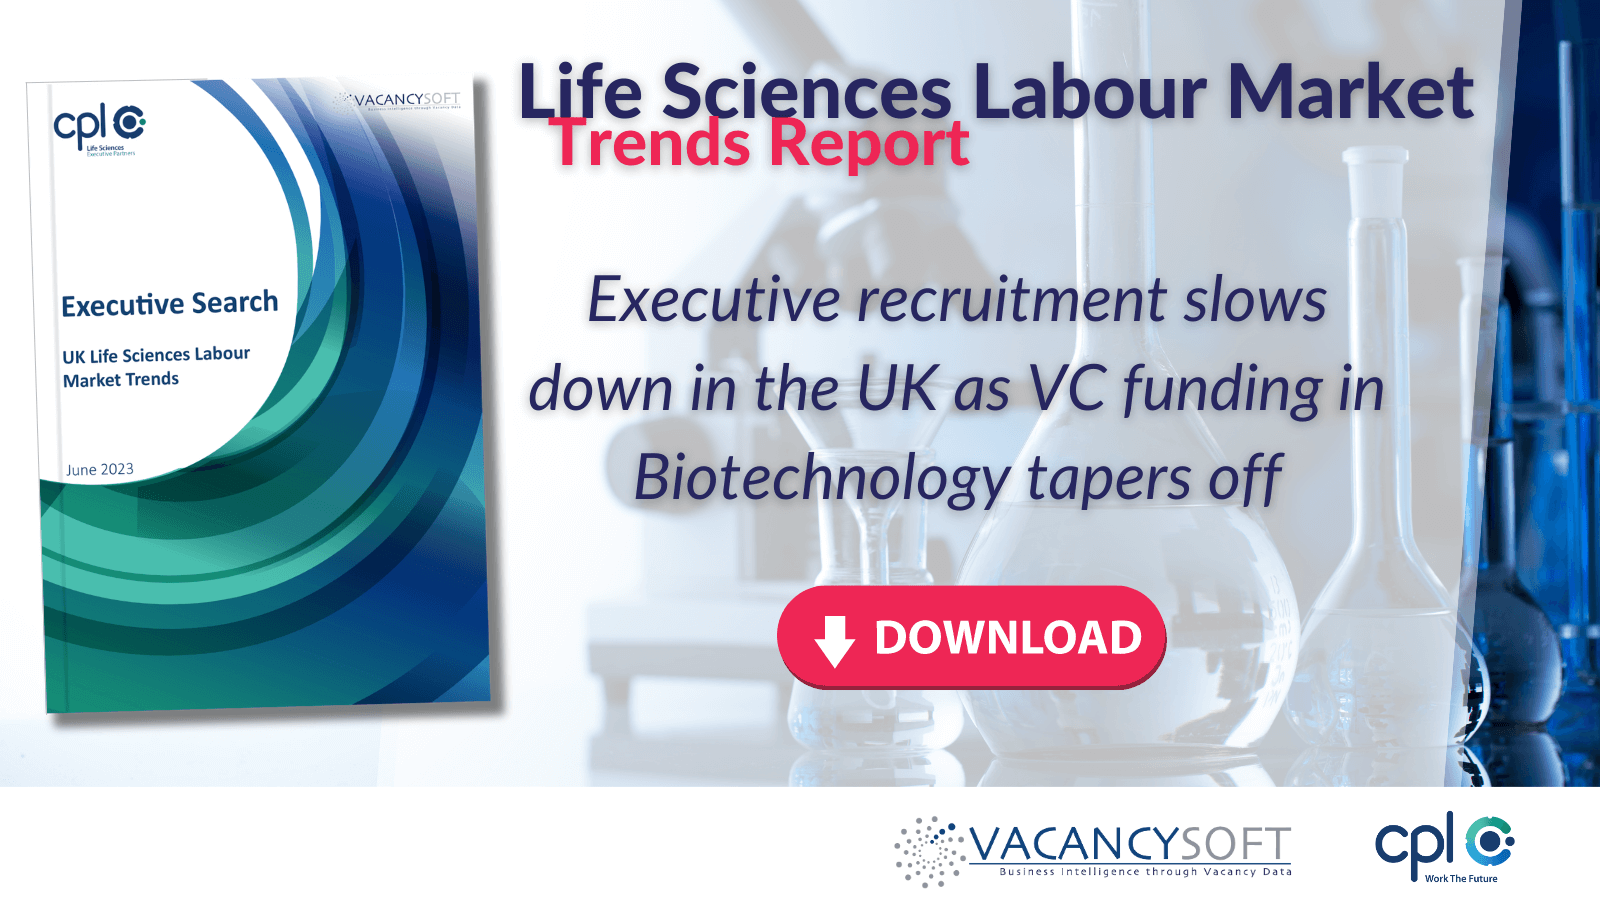 Executive Search – Life Sciences Labour Market Trends, June 2023